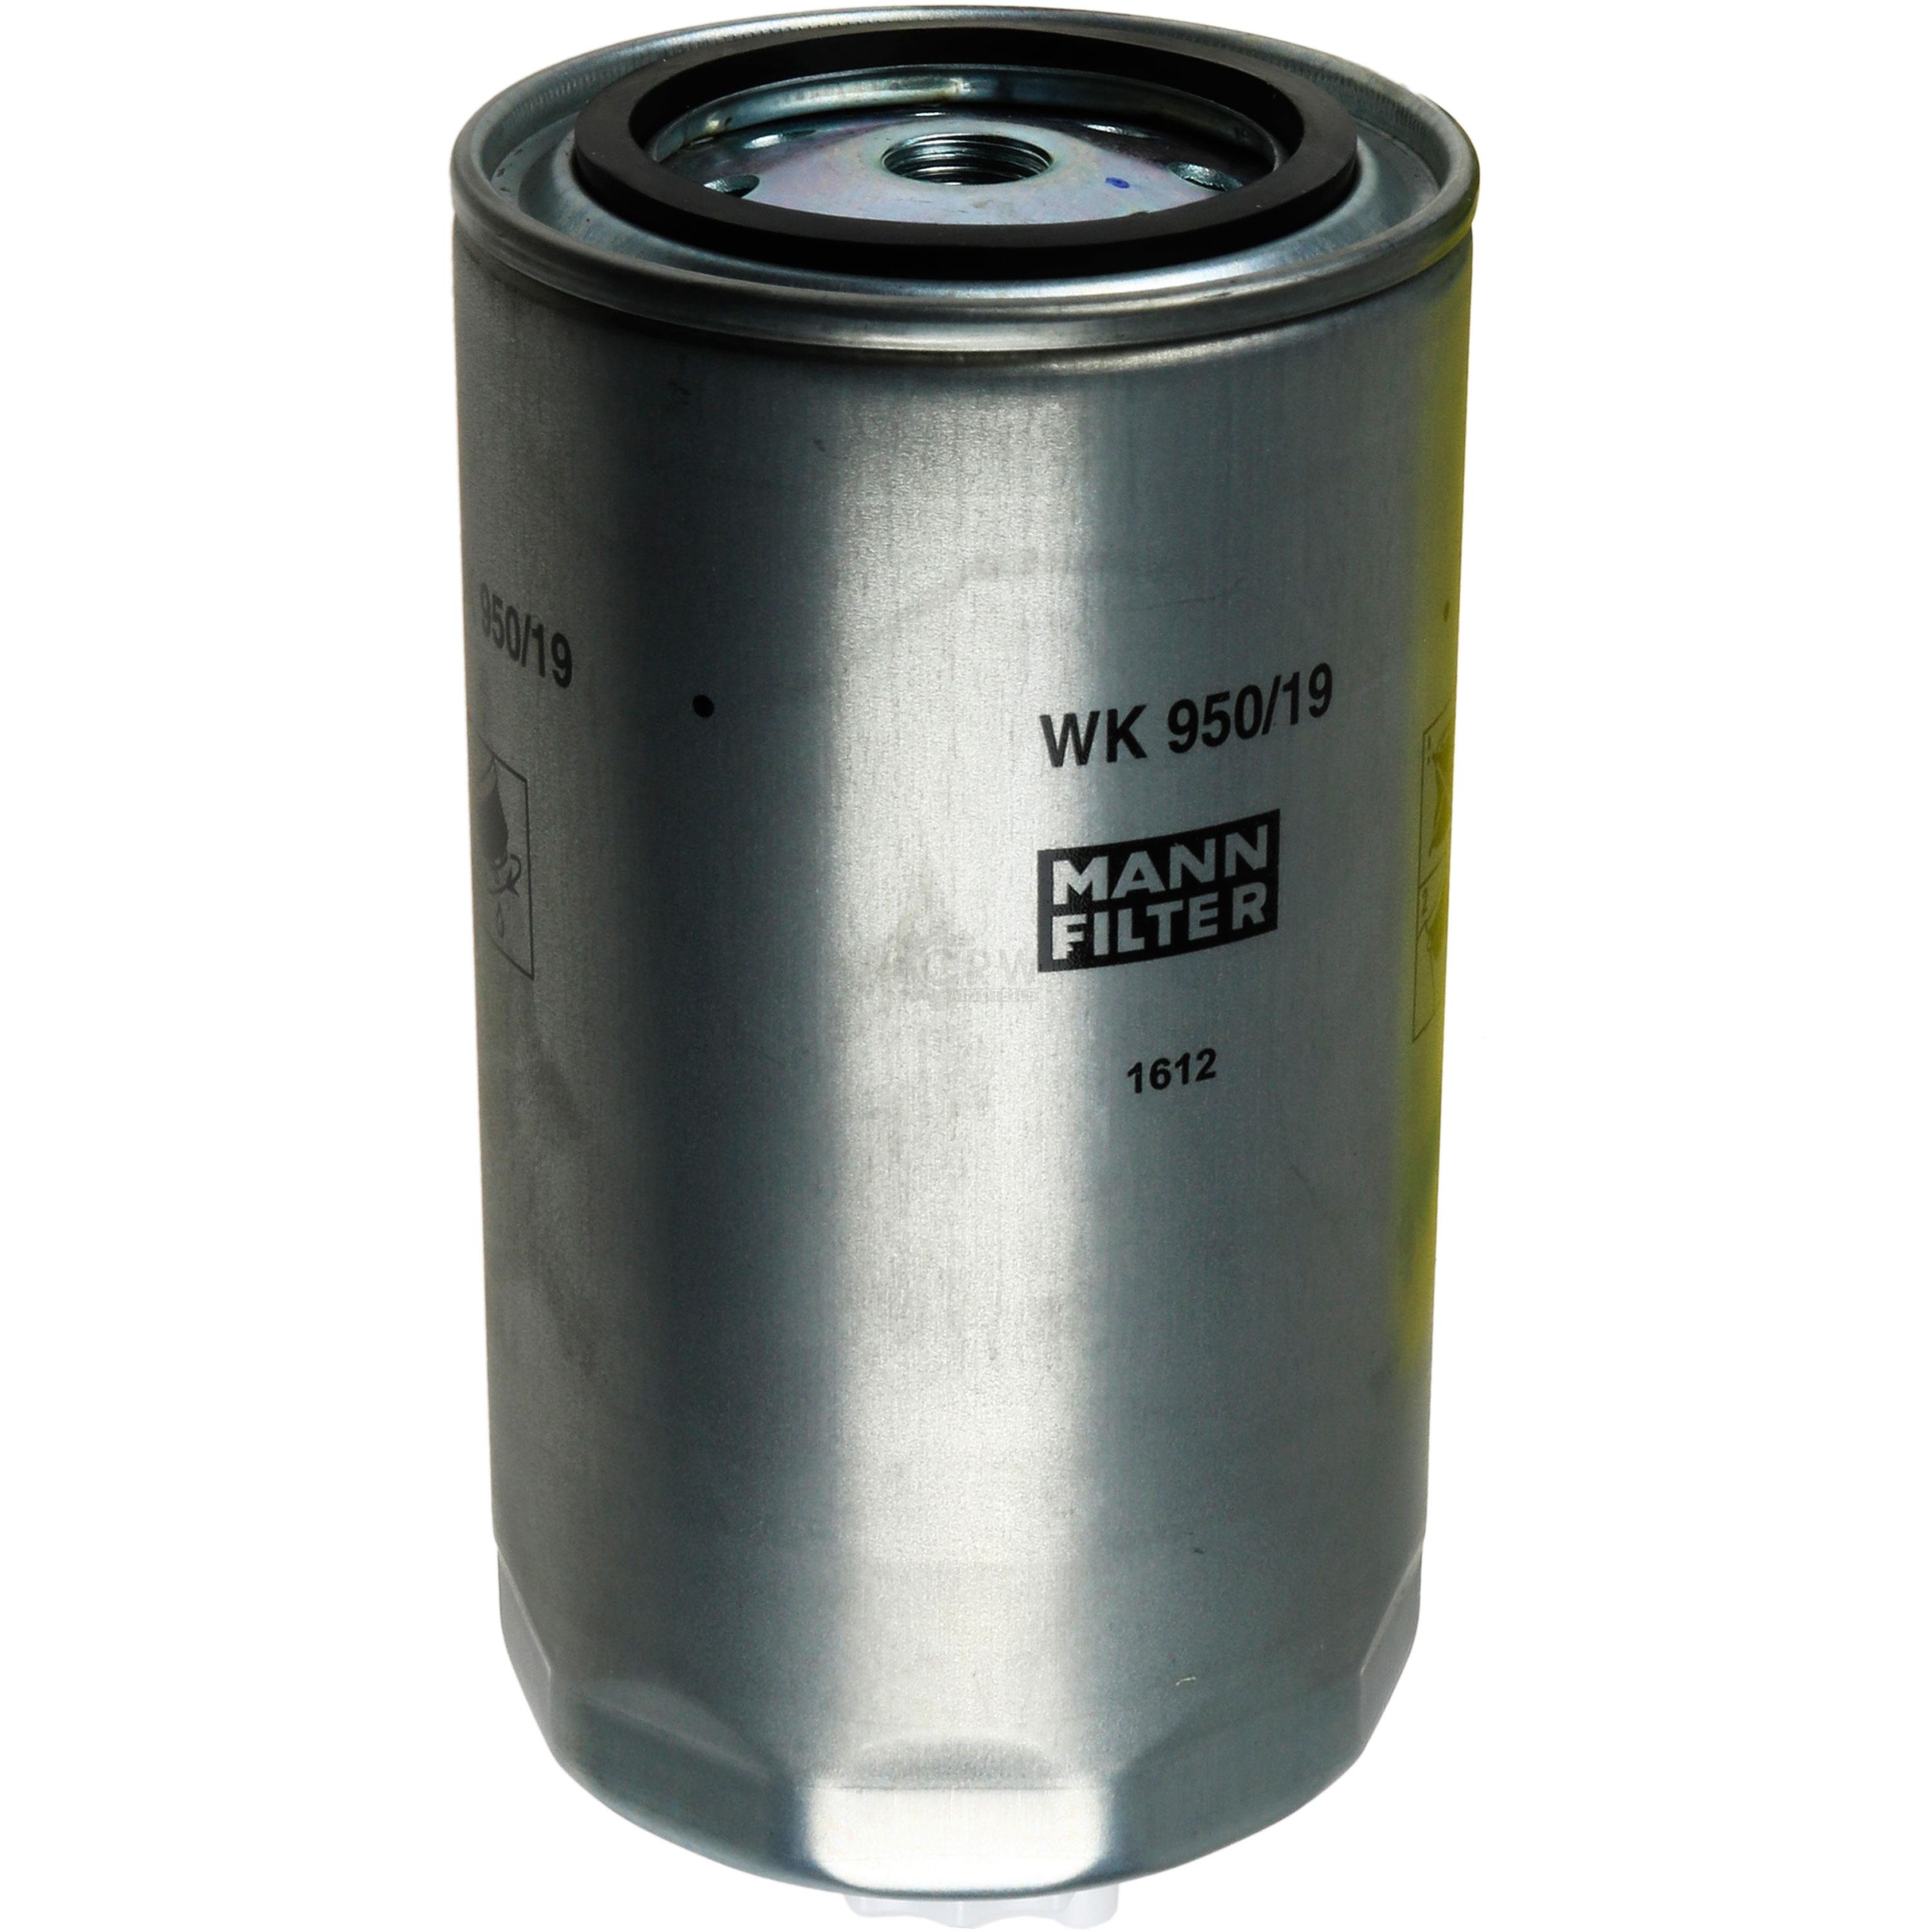 MANN-FILTER Kraftstofffilter WK 950/19 Fuel Filter